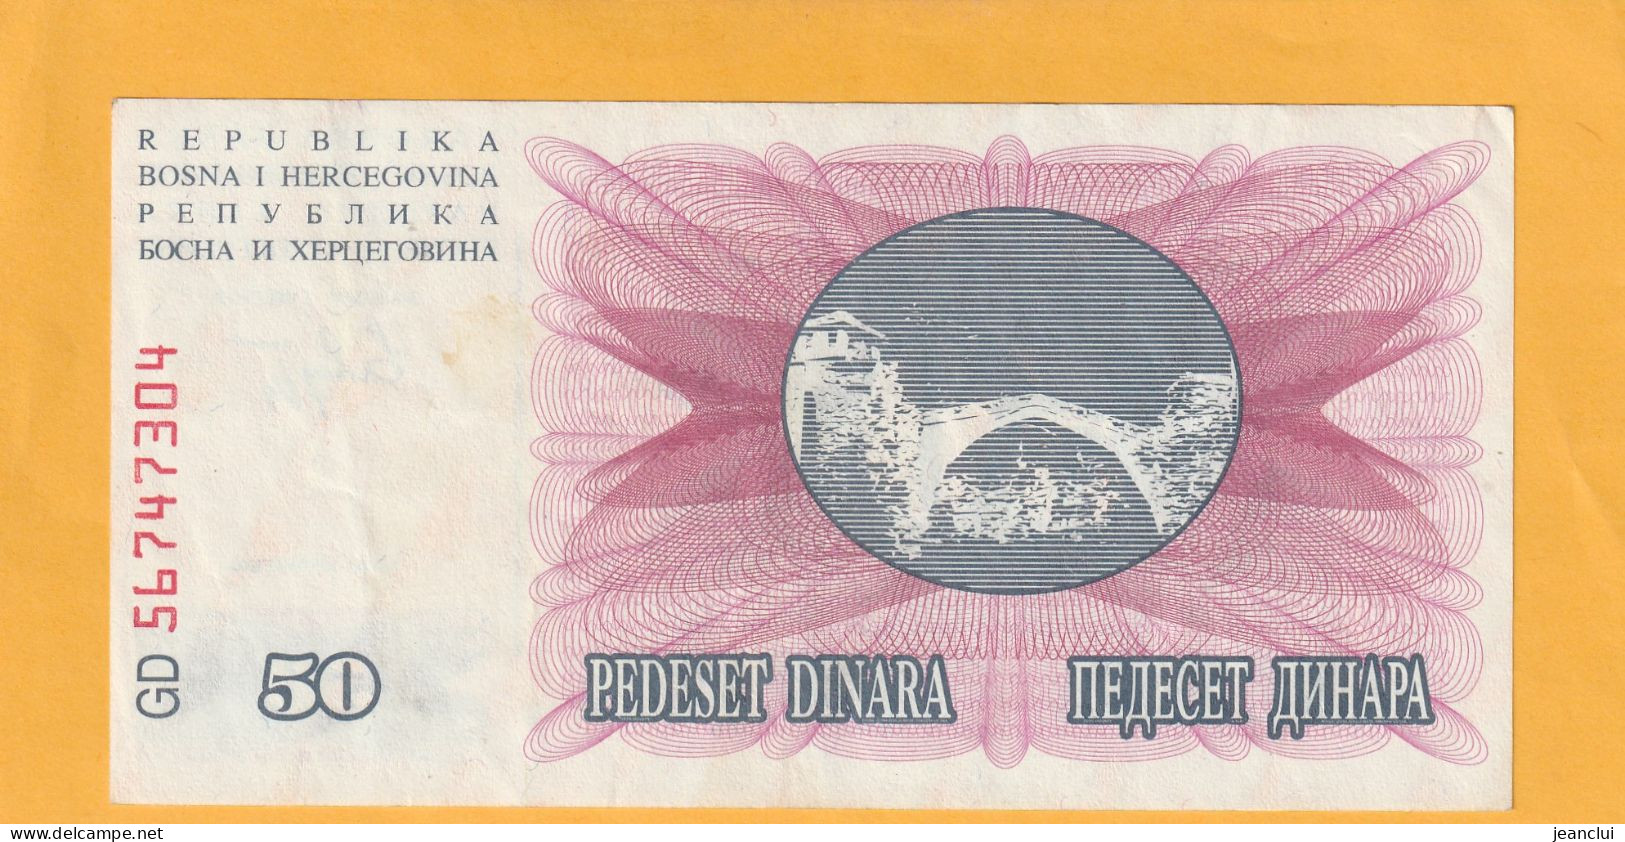 NARODNA BANKA BOSNE I HERCEGOVINE  .  50 DINARA  . 1-7-1992  .  N°  56 74 7304  .  2 SCANNES  .  BILLET EN TRES BEL ETAT - Bosnië En Herzegovina